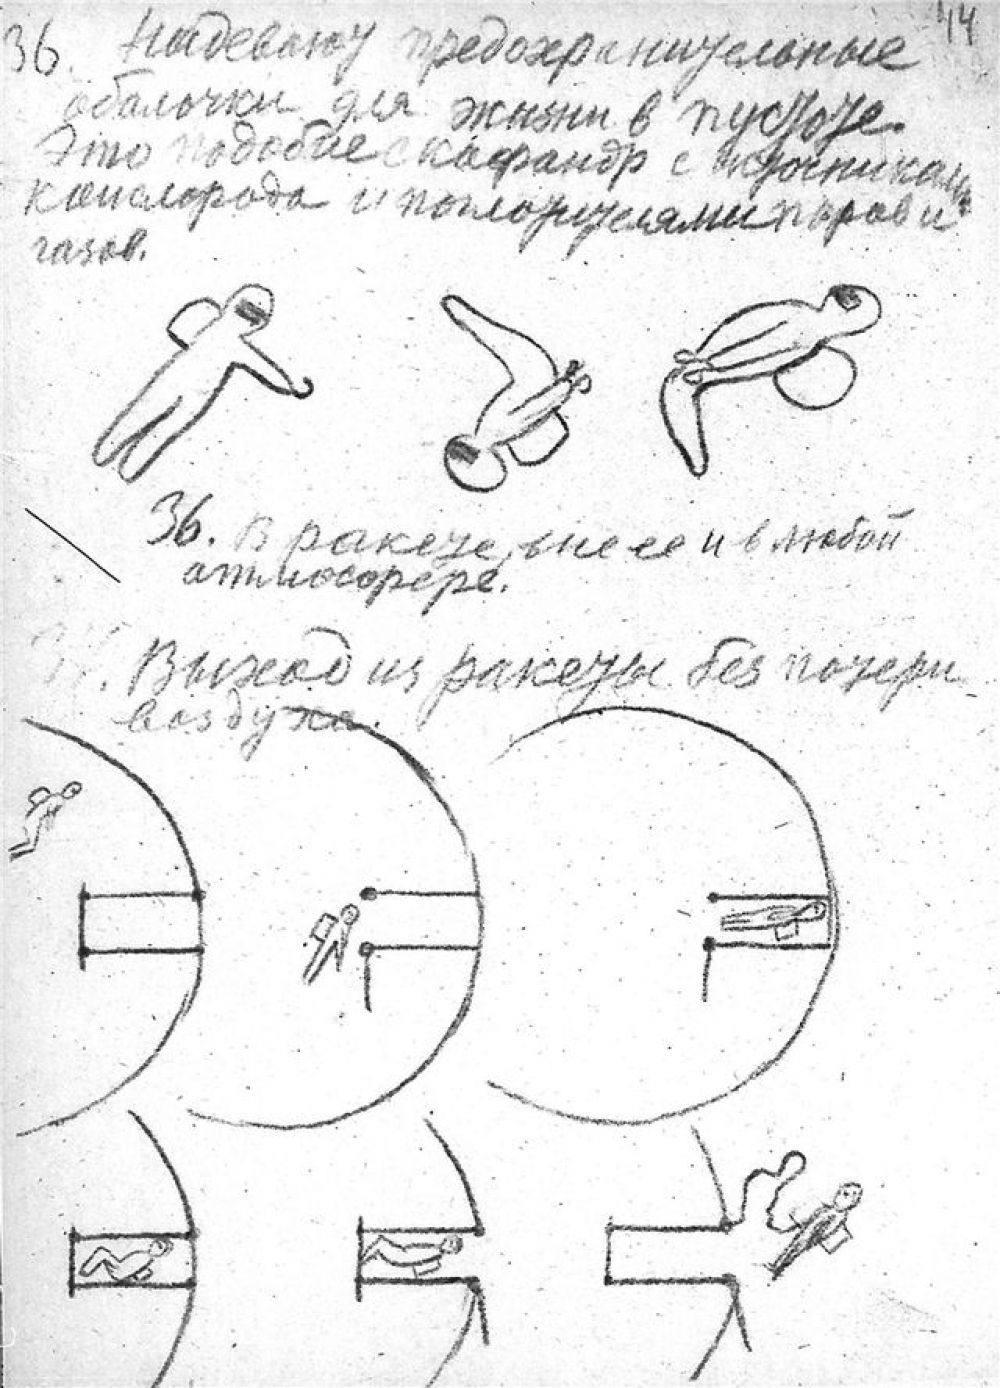 Записи и рисунки Циолковского: выход ракеты без потери воздуха. Возможно, первое изображение скафандра.